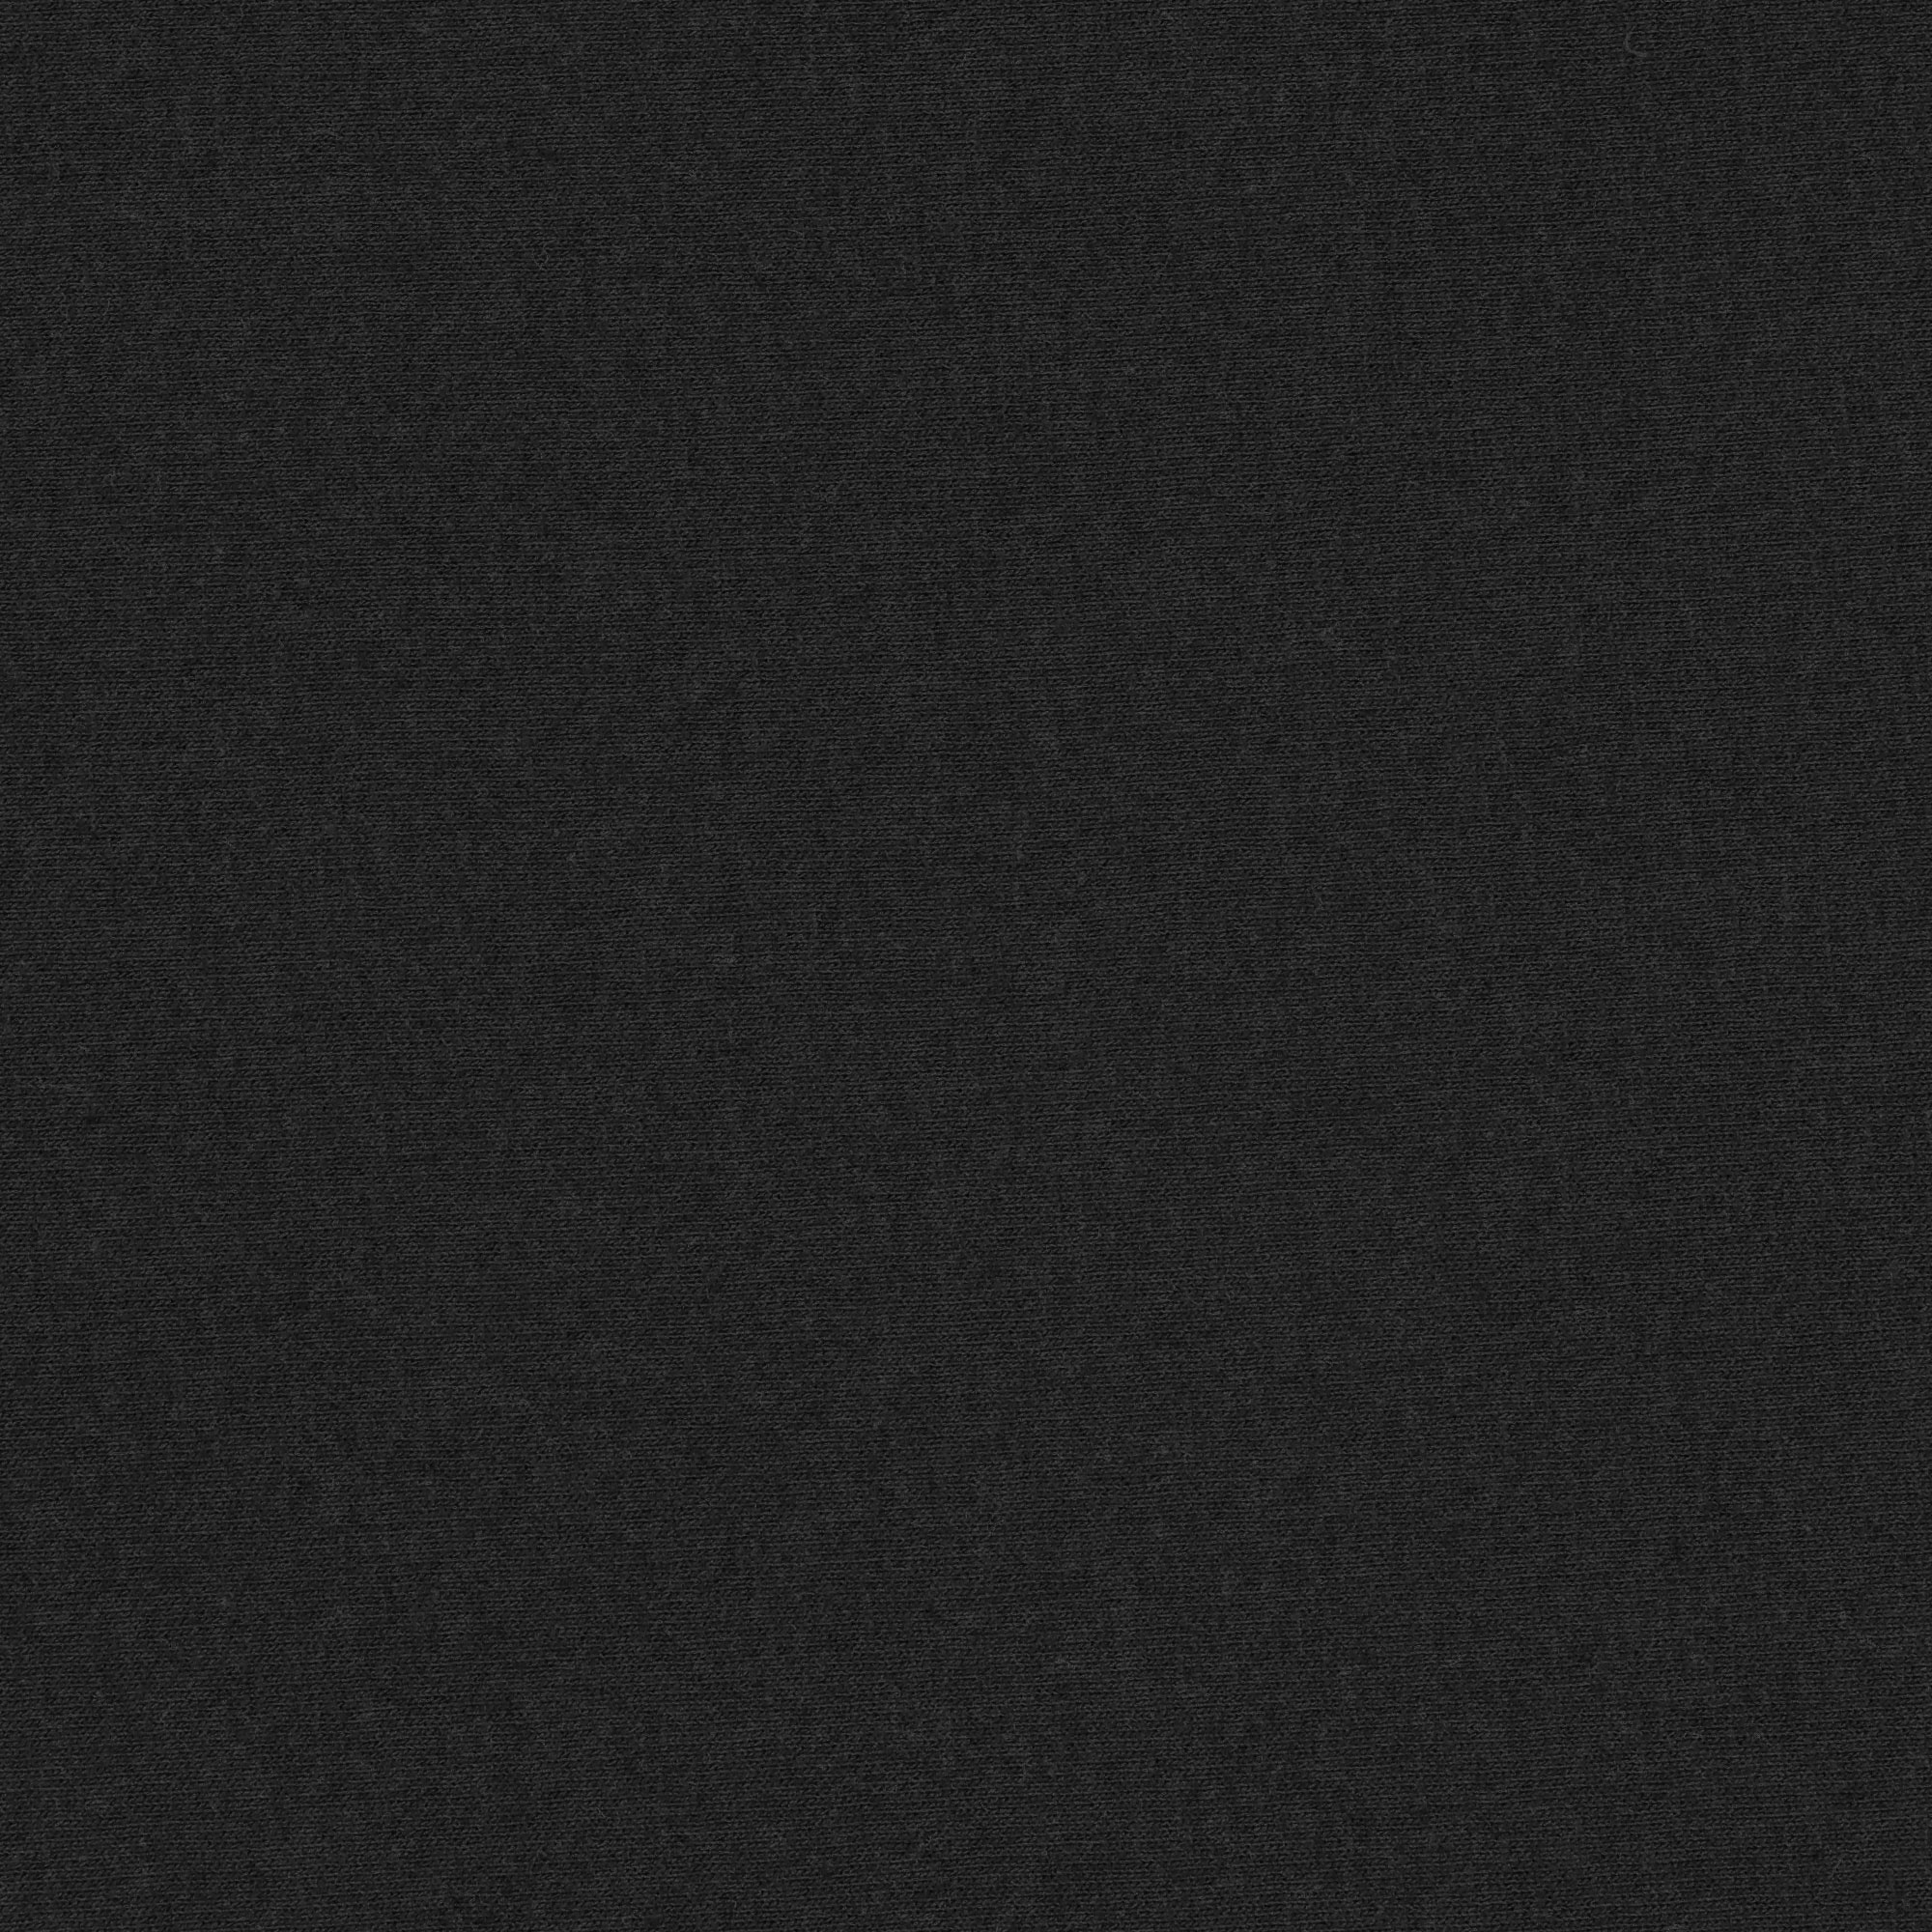 Футболка женская AMADEY classic черная 46-48 L, цвет черный, размер L - фото 3